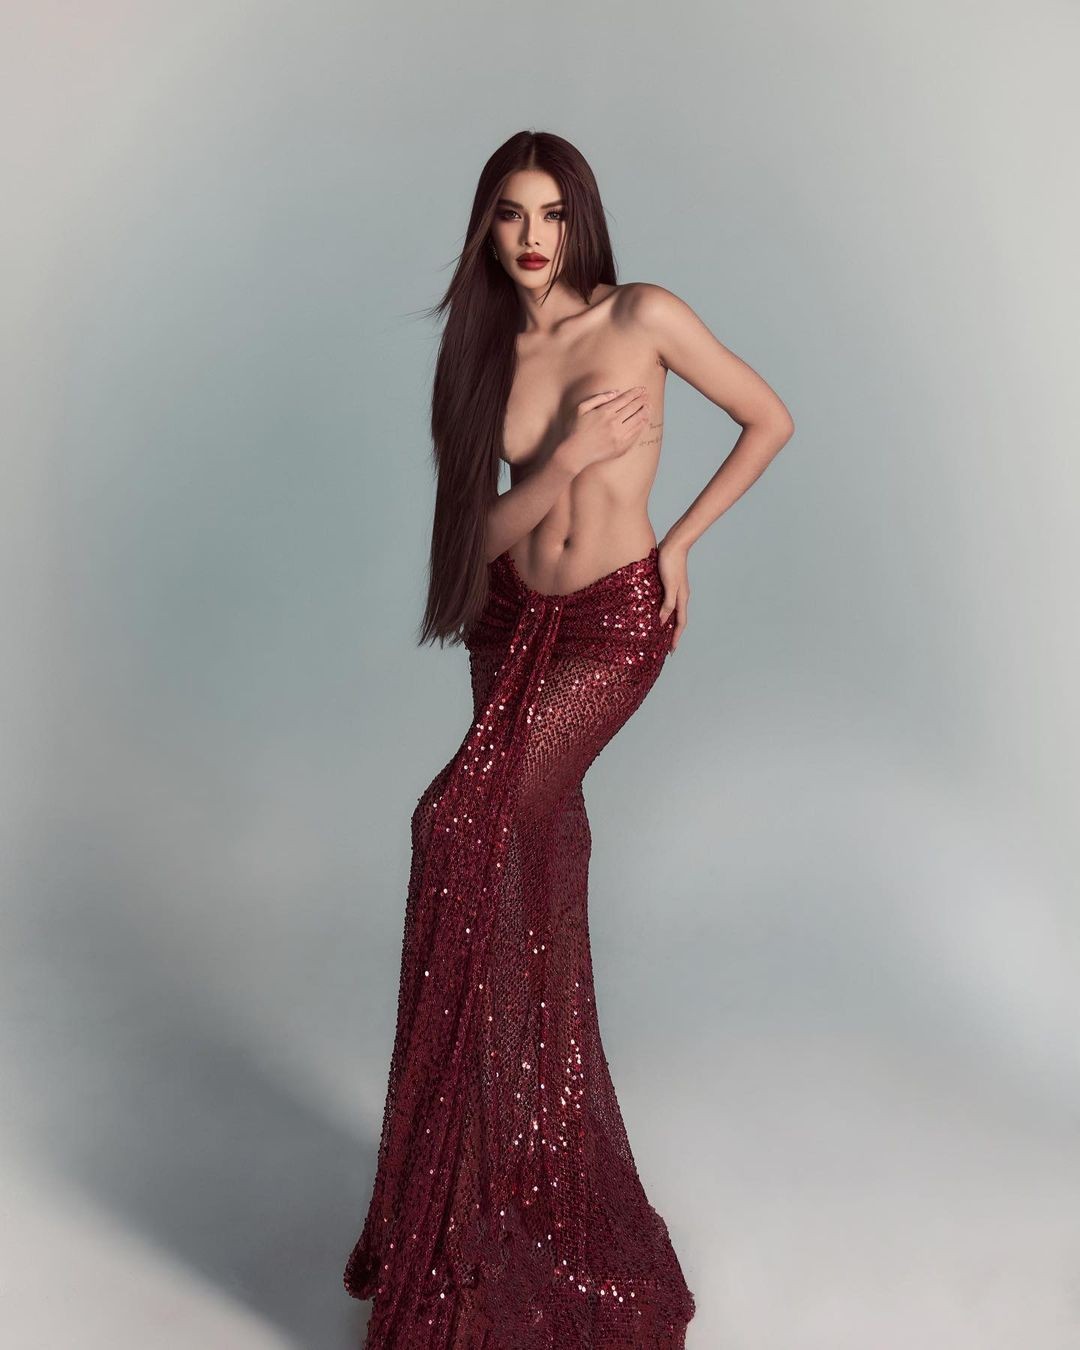 Hoa hậu Hòa bình Thái Lan gây tranh cãi vì chụp ảnh bán khỏa thân- Ảnh 2.